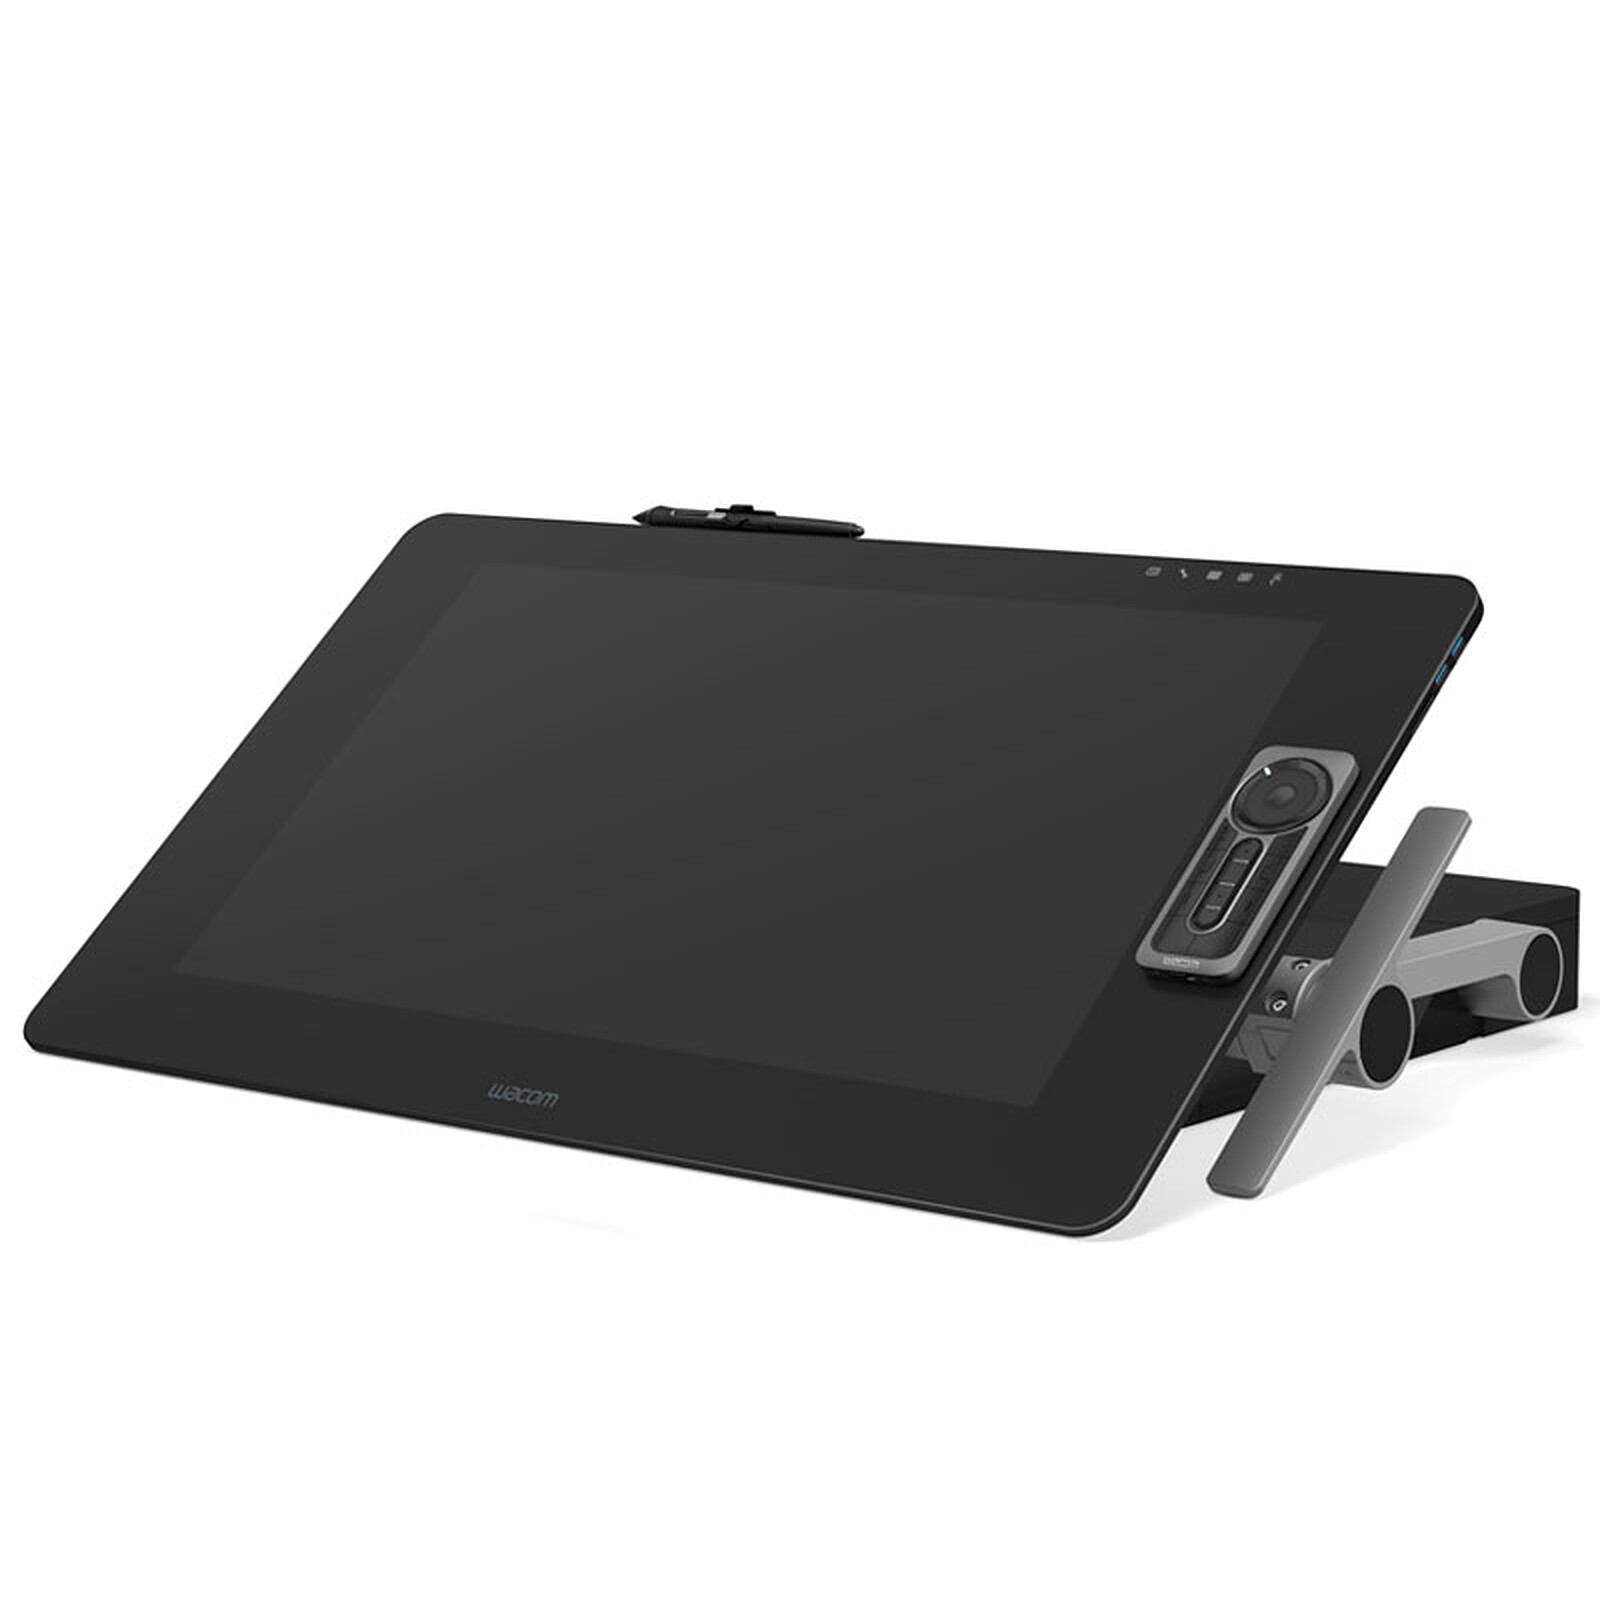 Wacom Intuos Pro S (PTH-460) Noir - Tablette graphique - Garantie 3 ans LDLC